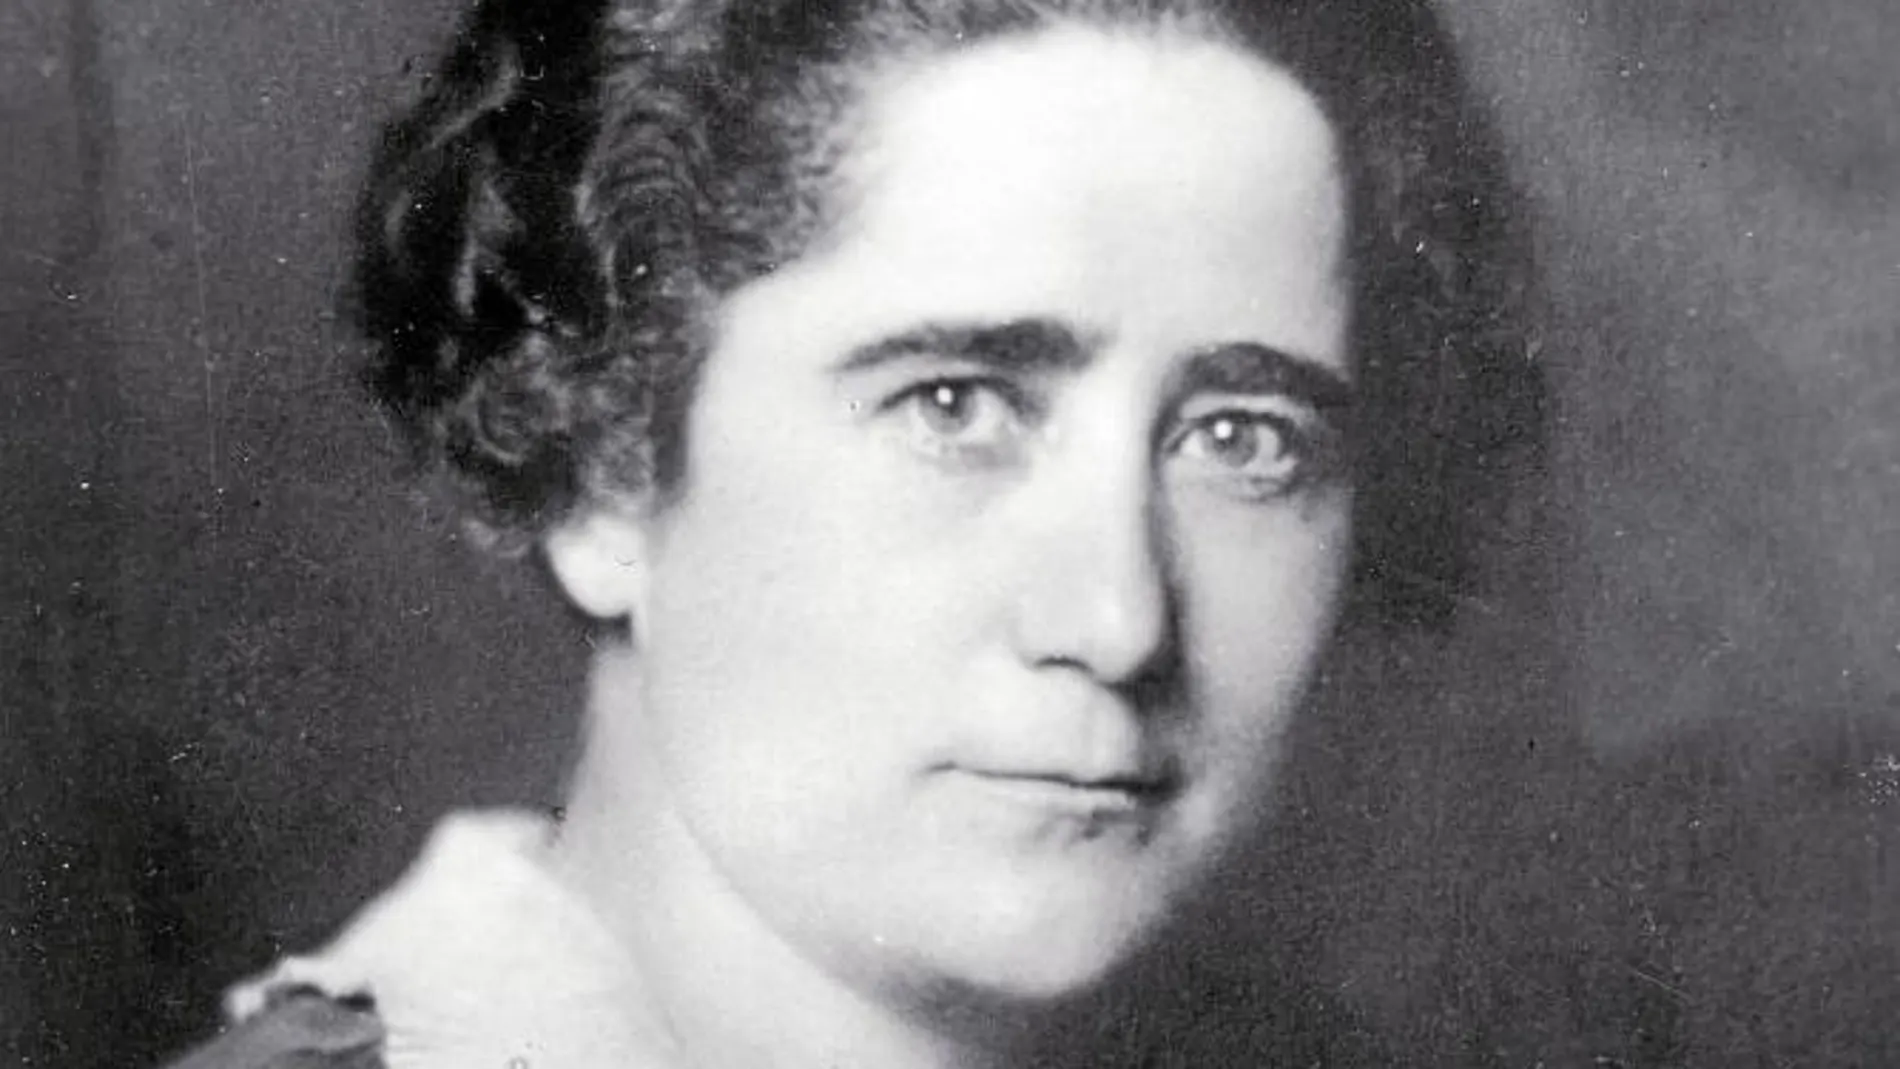 En España, la llegada de la República marcó el punto de inflexión y en 1931 se aprobó el sufragio femenino con un papel muy destacado de Clara Campoamor